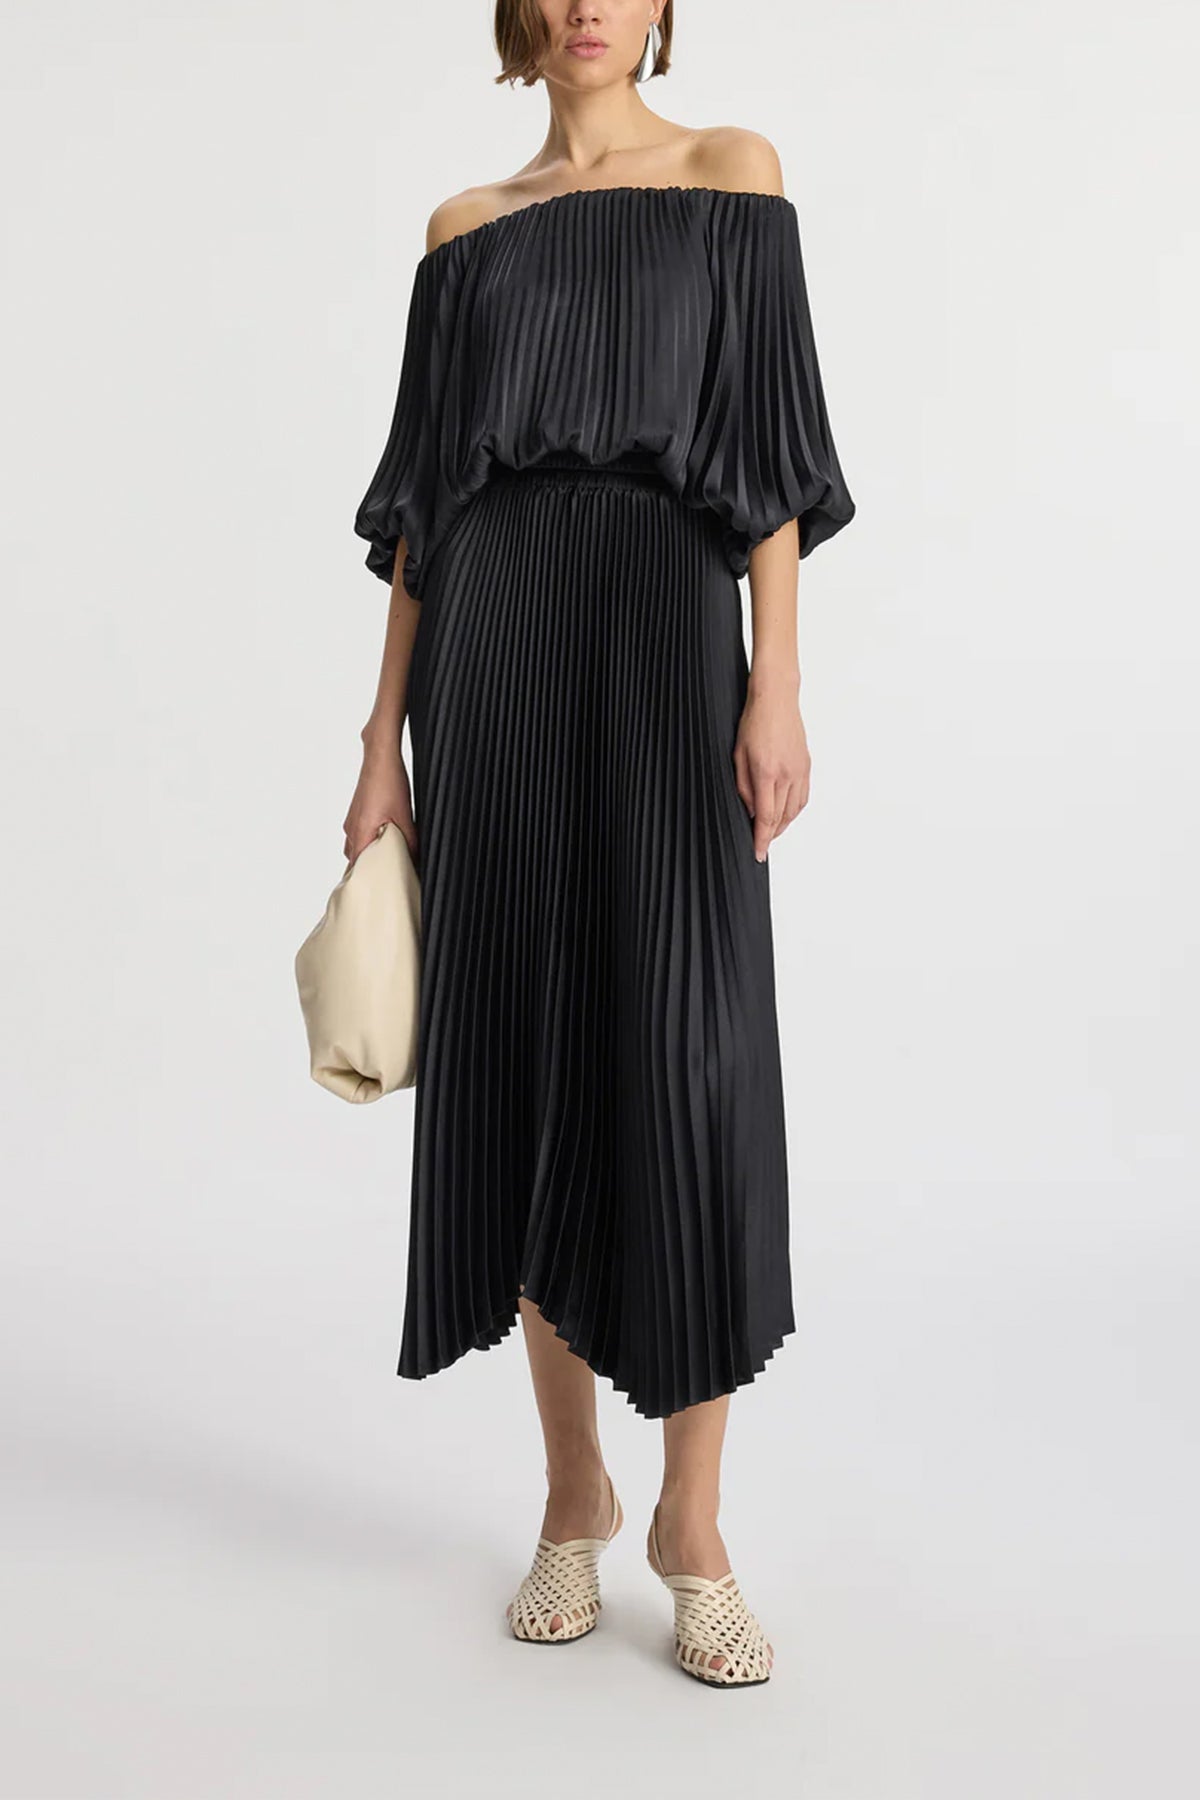 Sienna Satin Pleated Off Shoulder Dress in Black - shop-olivia.com